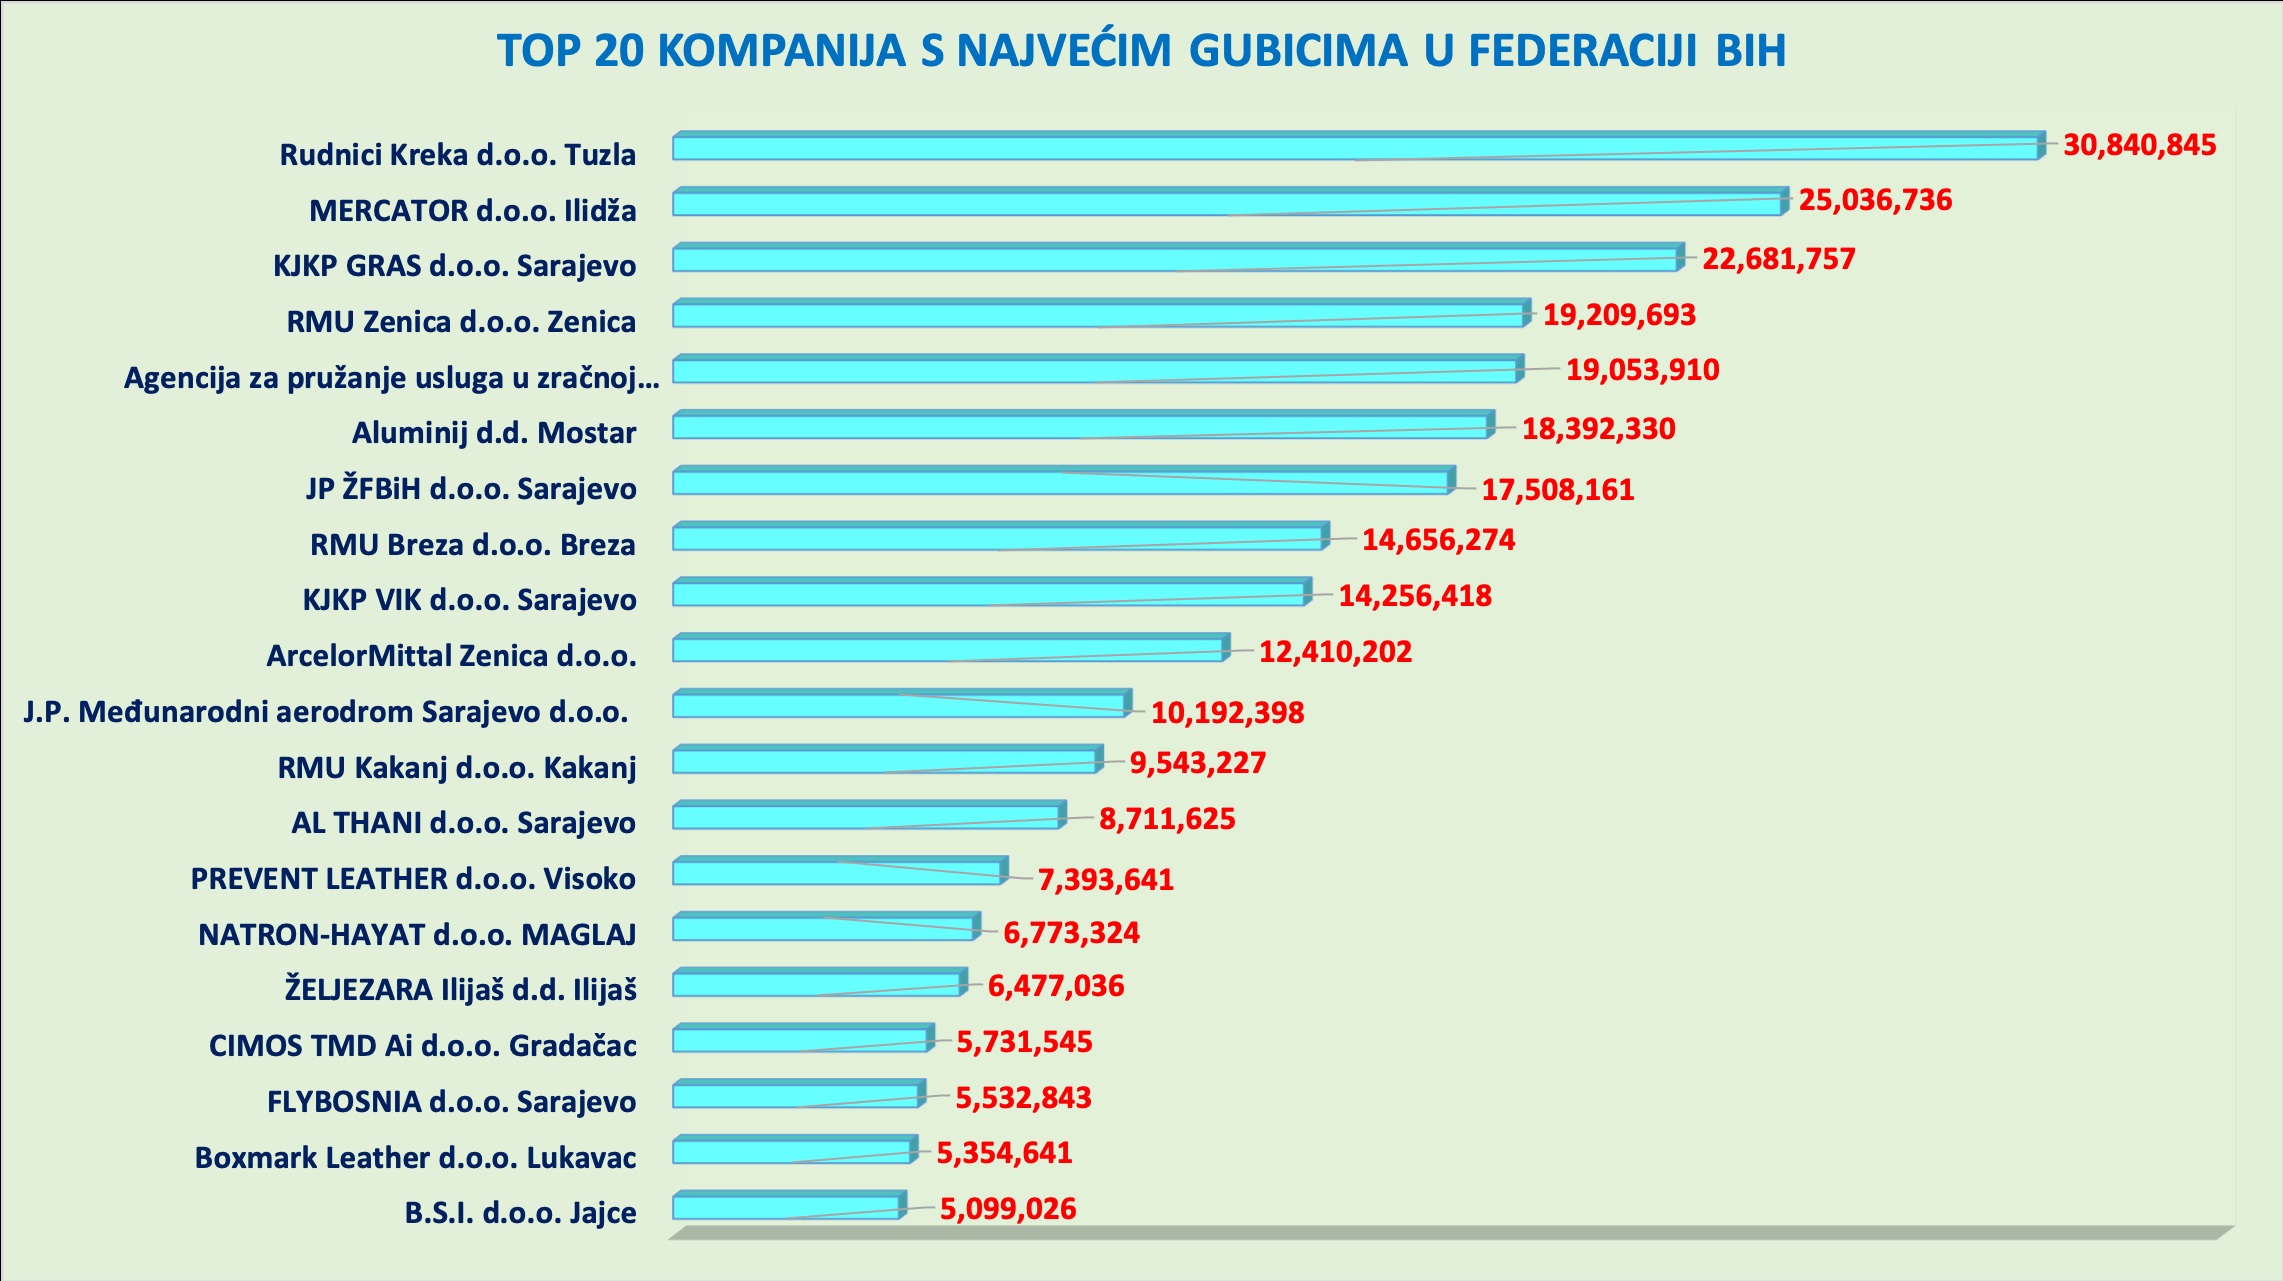 TOP 20 kompanija s najvećim gubicima u Federaciji BiH